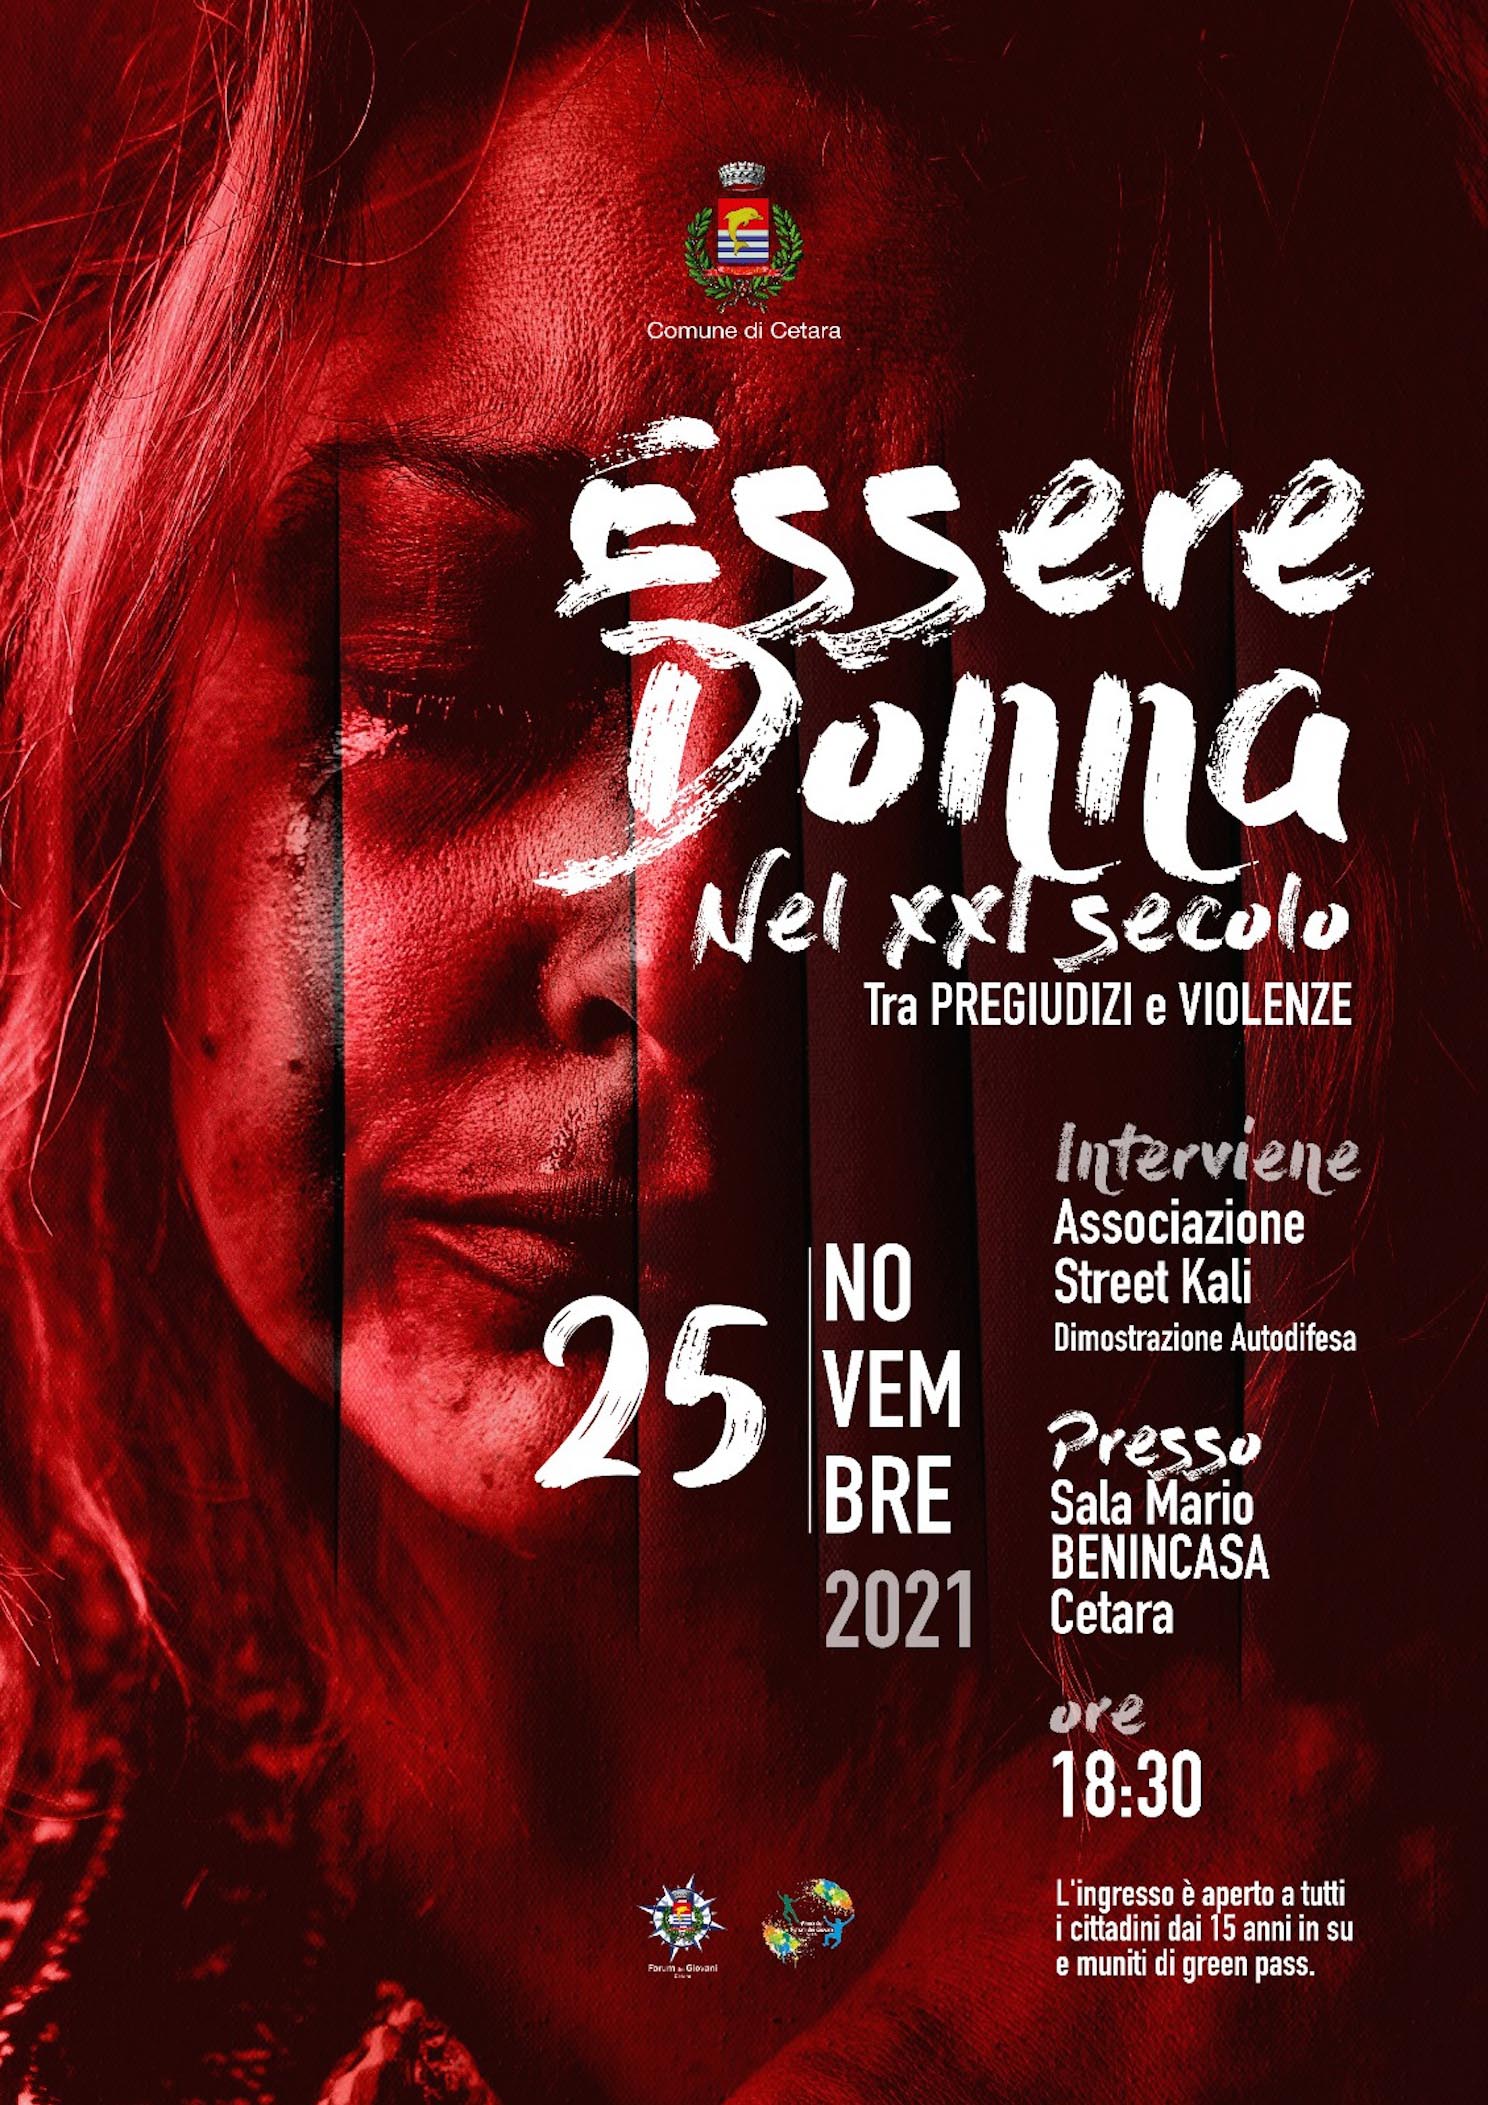 Cetara: eventi Giornata internazionale contro violenza sulle donne,